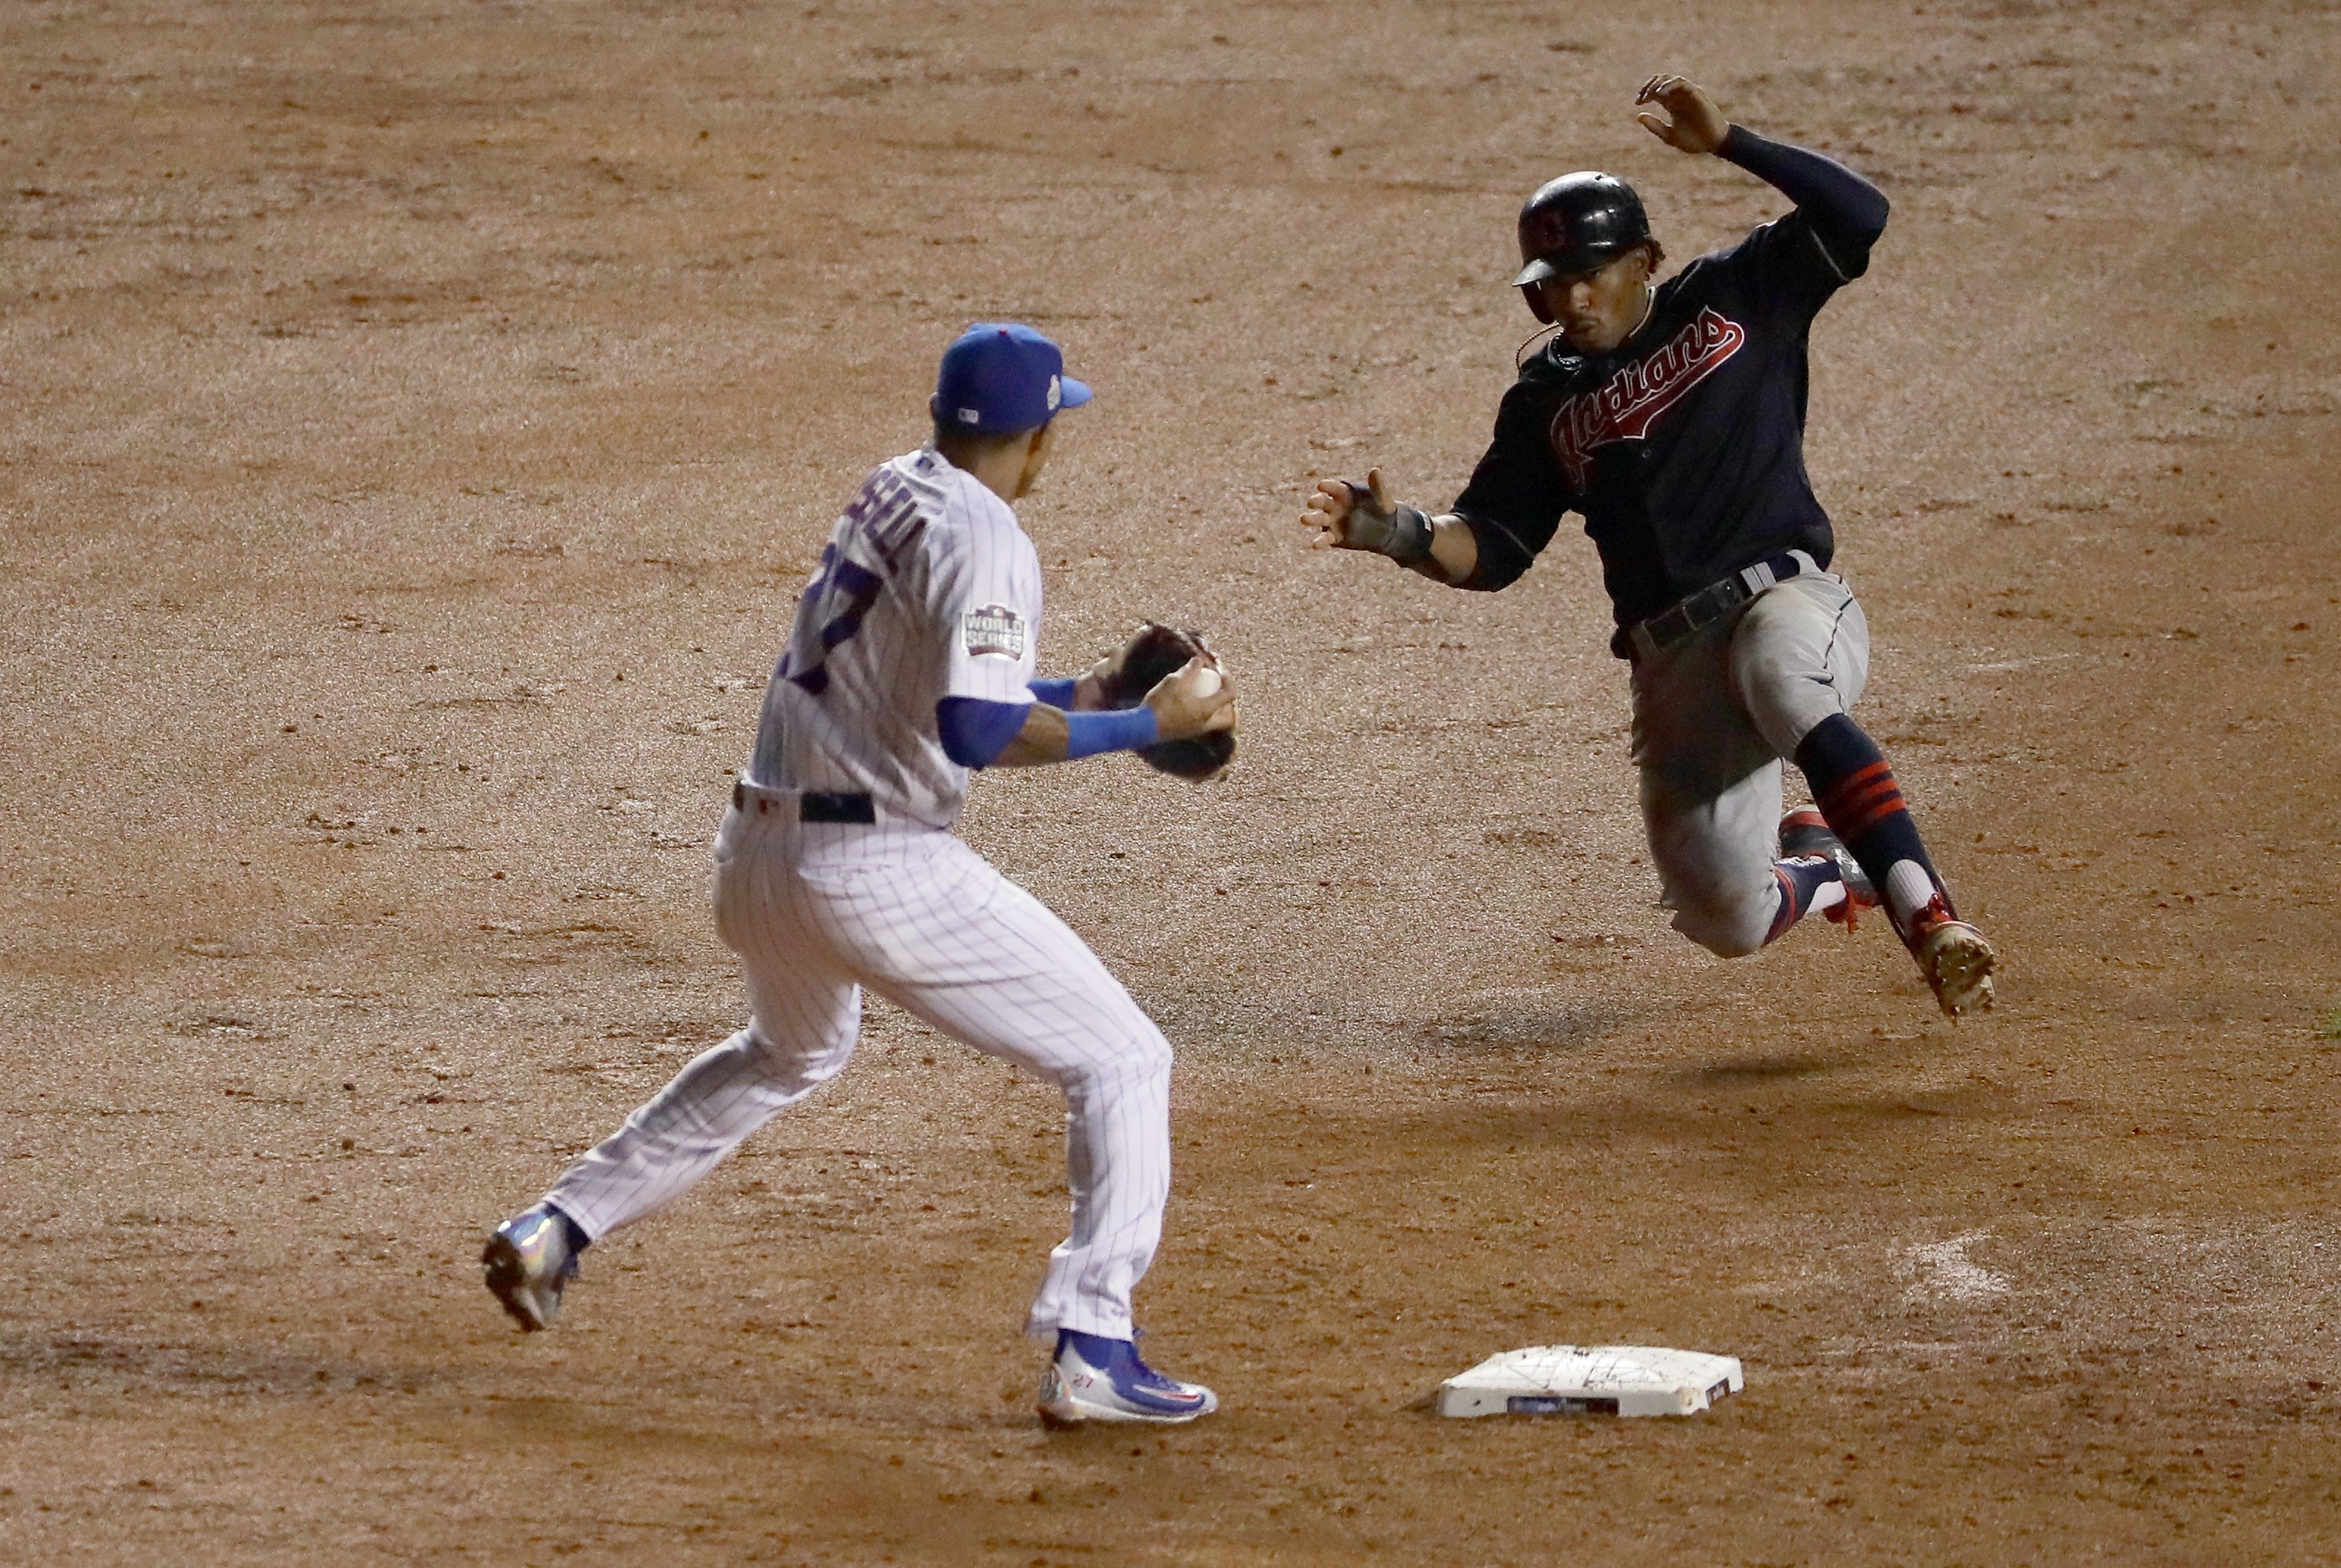 Yankees' shortstop Didi Gregorius hit a 295-foot home run, one of